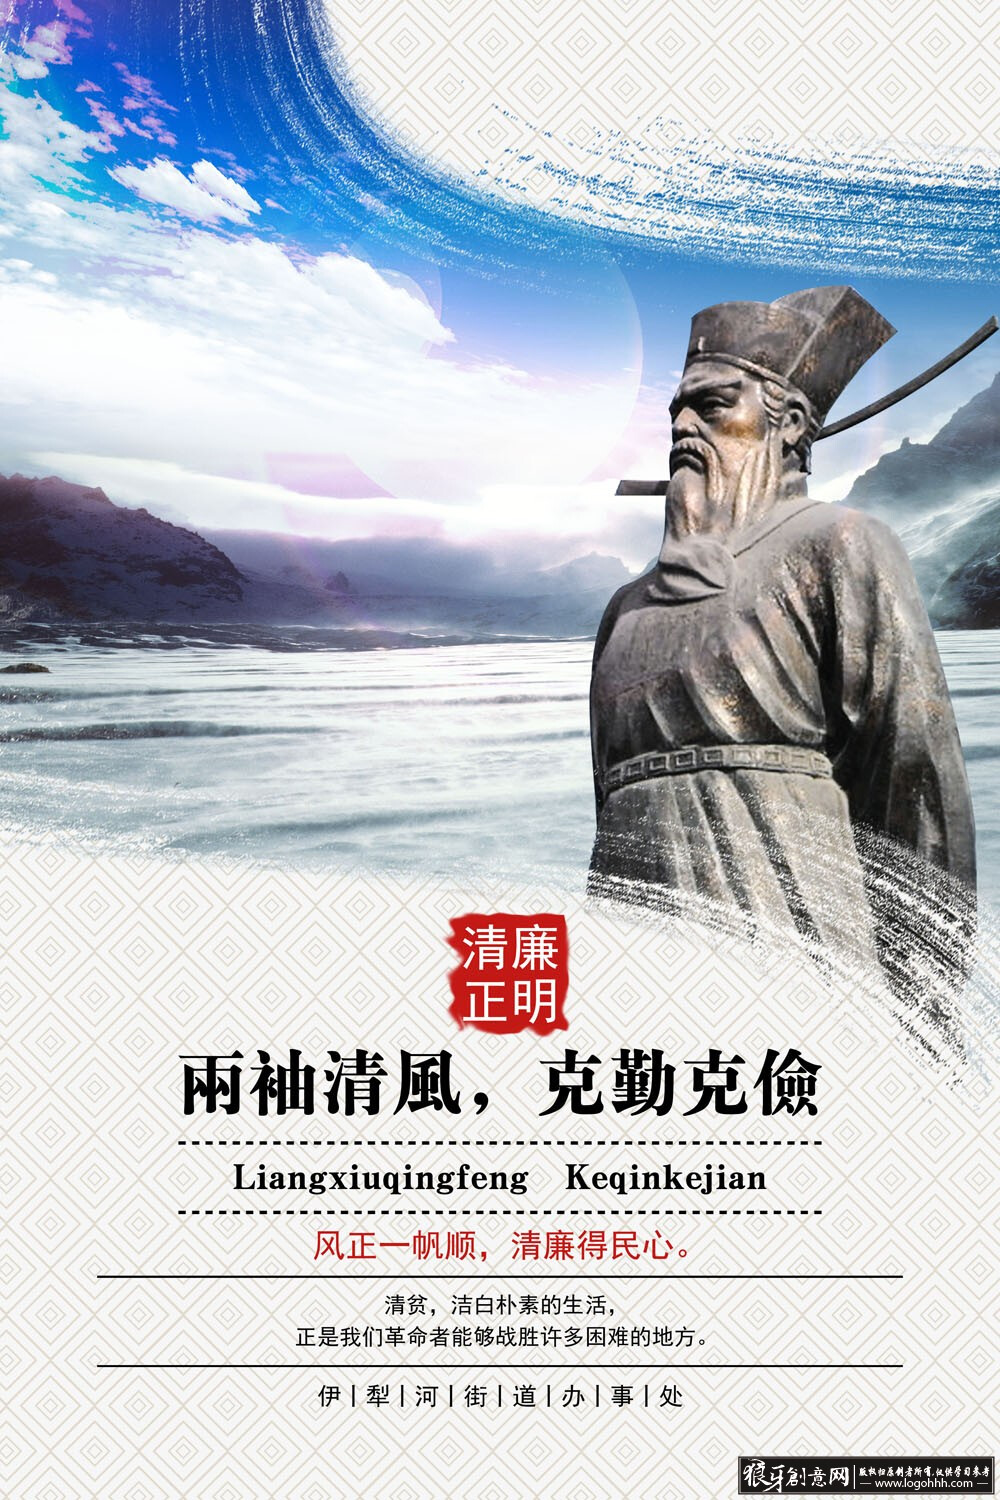 中国风廉政海报psd 古人雕塑像 清官人物雕像,两袖清风克勤克俭,清正